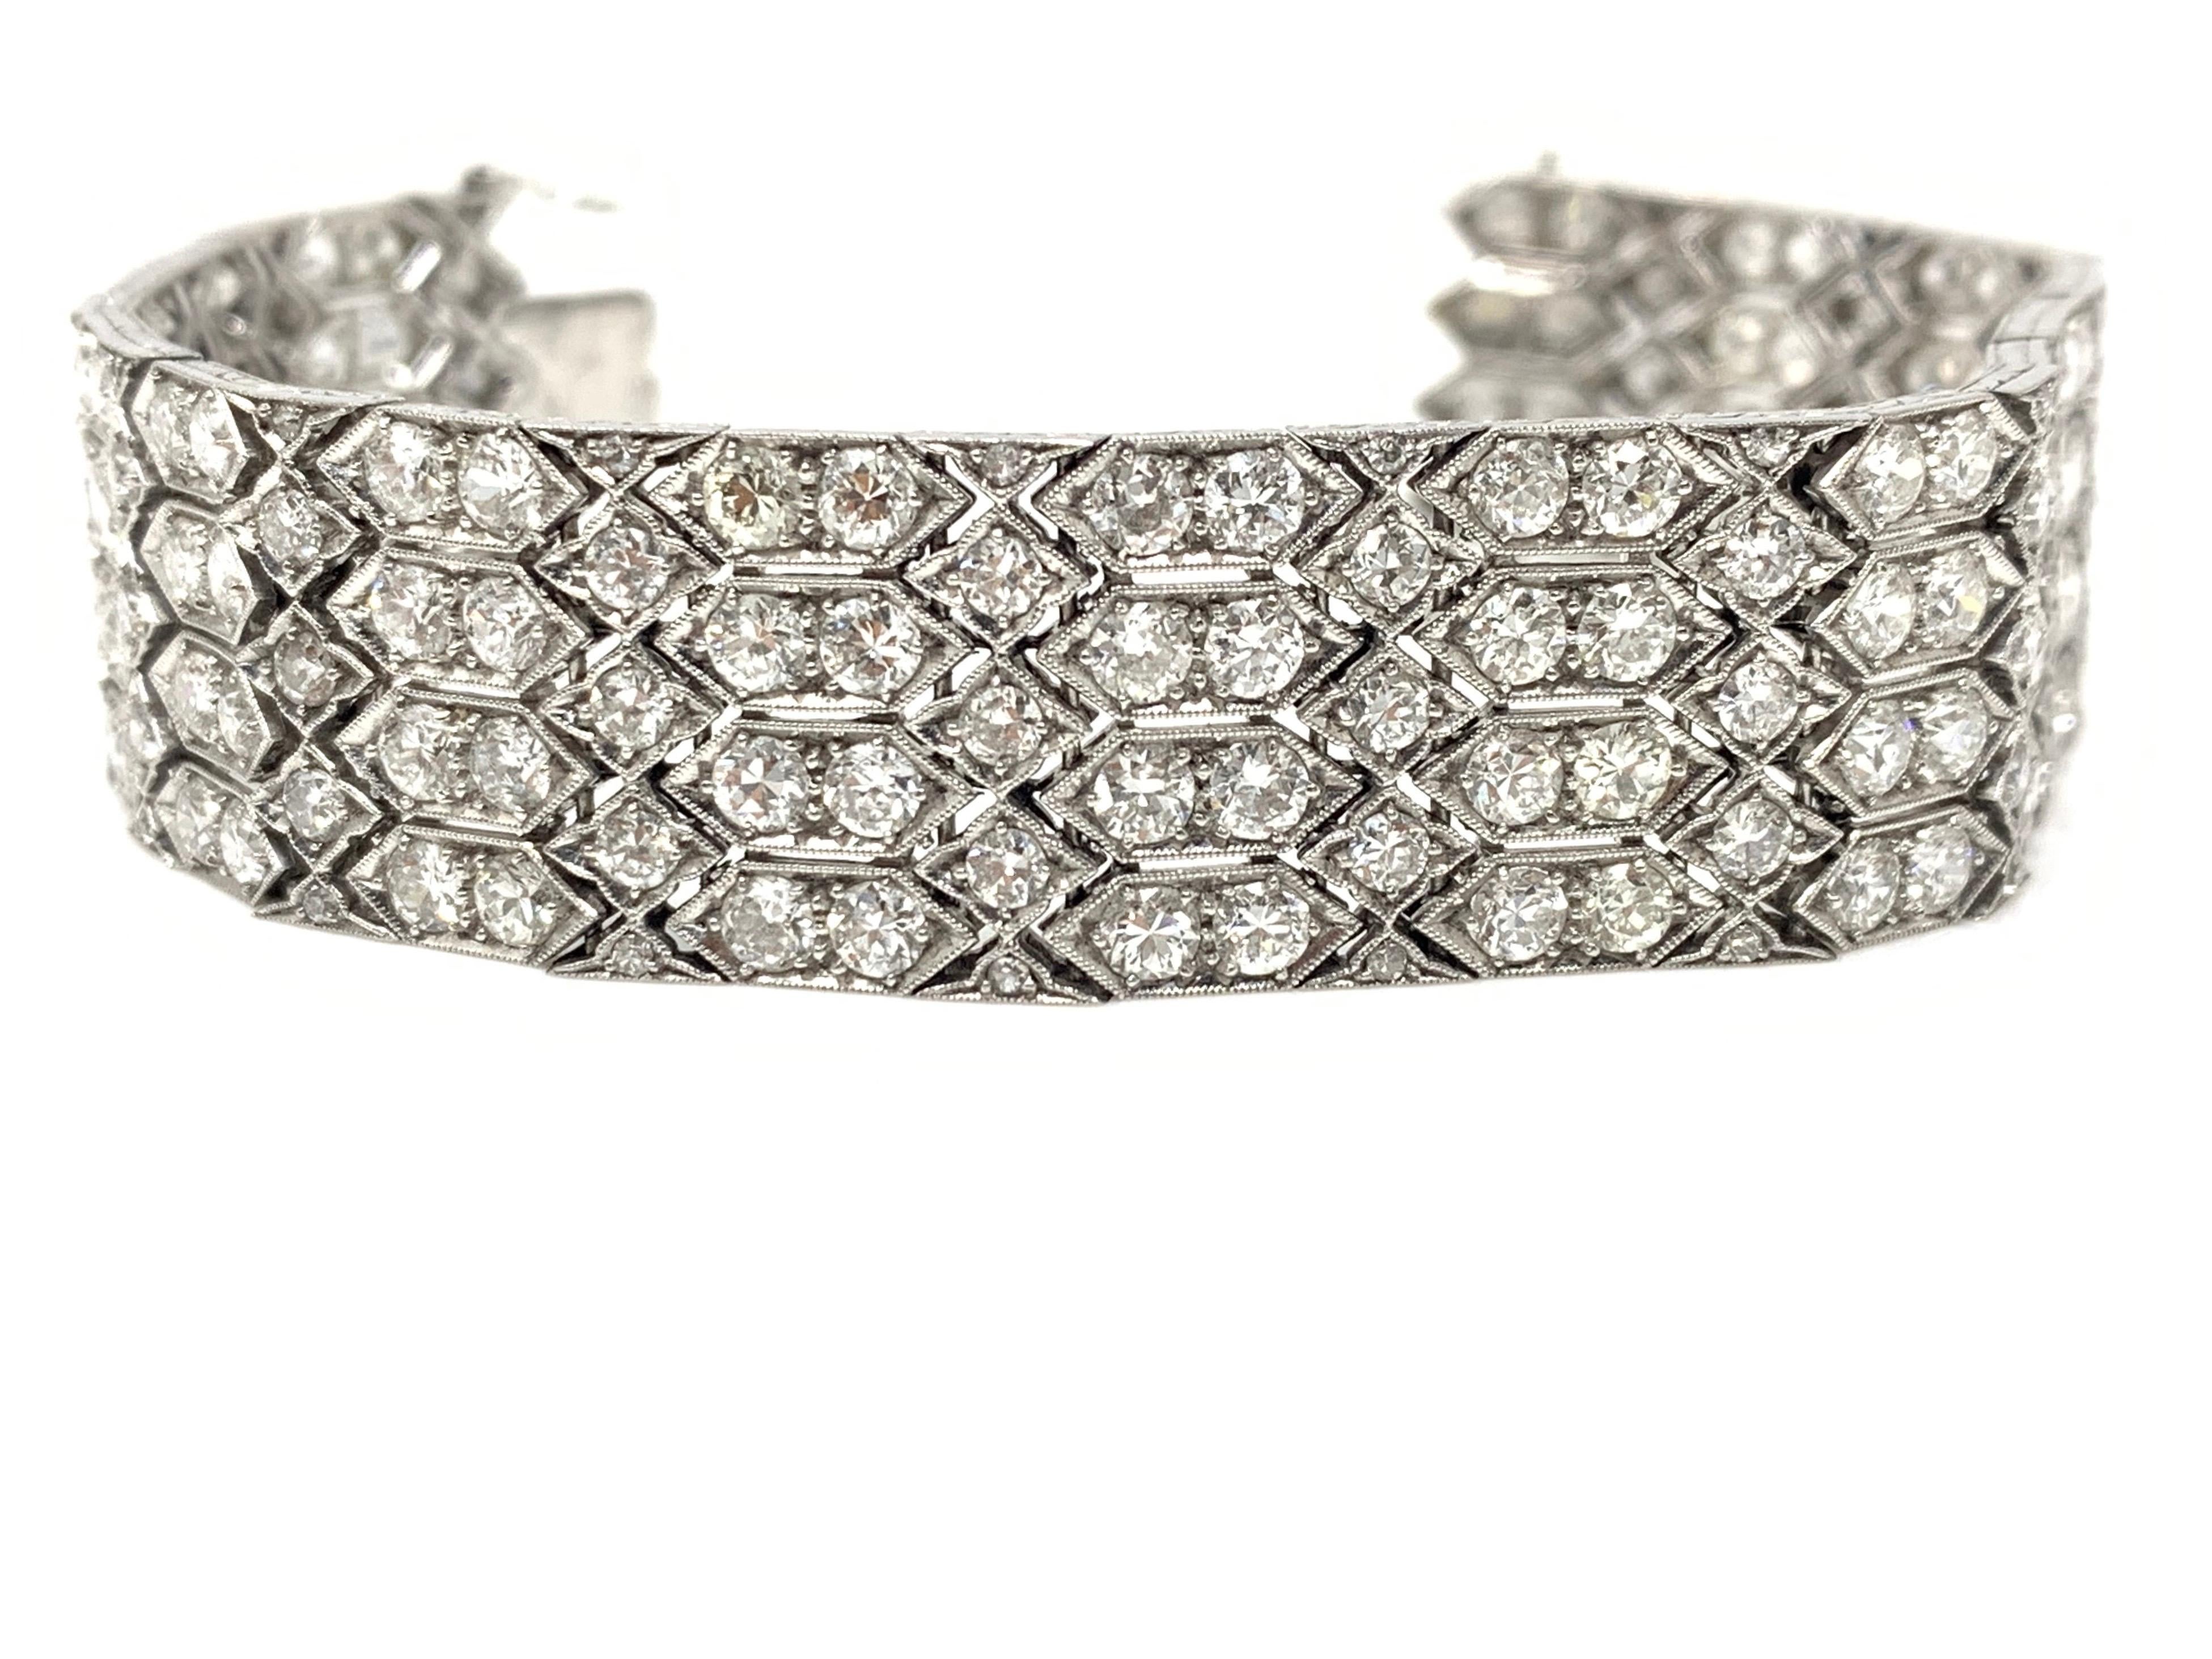 Art Deco 24 Carat 1920 Antique White Diamond Bracelet in Platinum For Sale